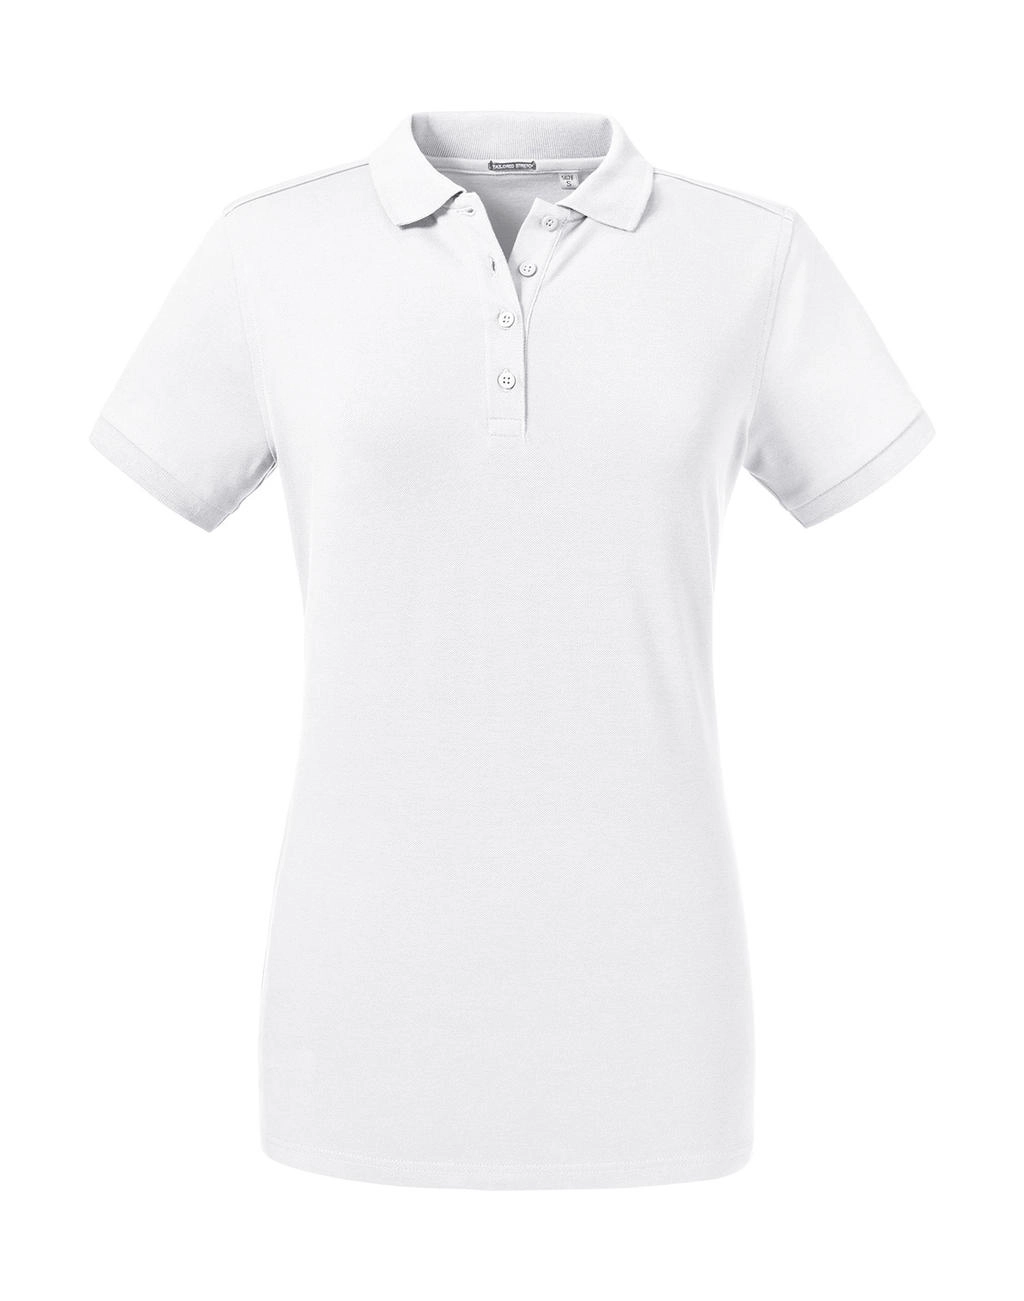 Ladies` Tailored Stretch Polo zum Besticken und Bedrucken in der Farbe White mit Ihren Logo, Schriftzug oder Motiv.